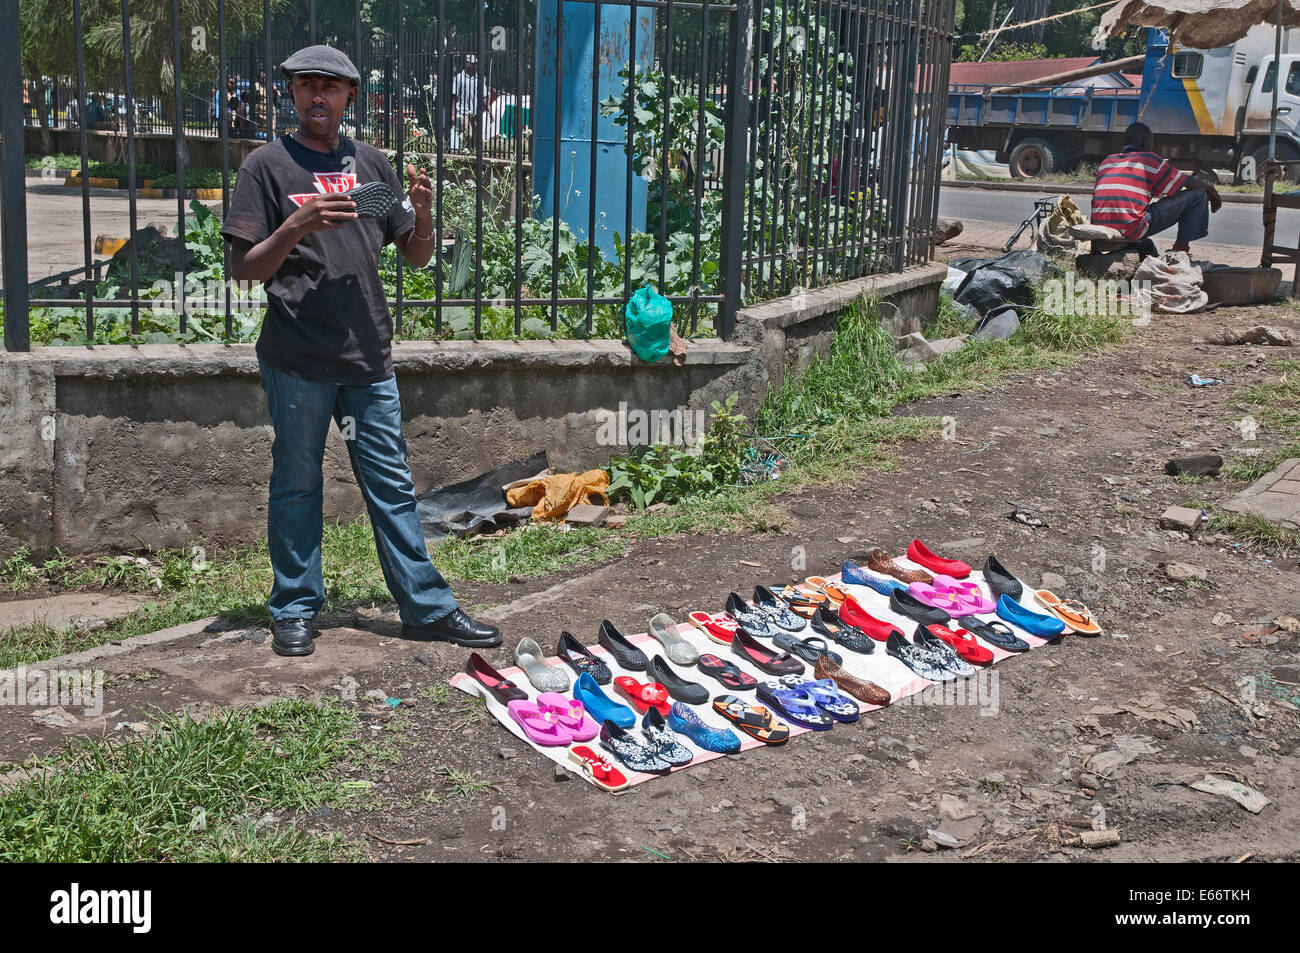 Hombre intentando vender zapatos calzado sandalias en un lado de la calzada con zapatos aparece en el trozo de tela Foto de stock